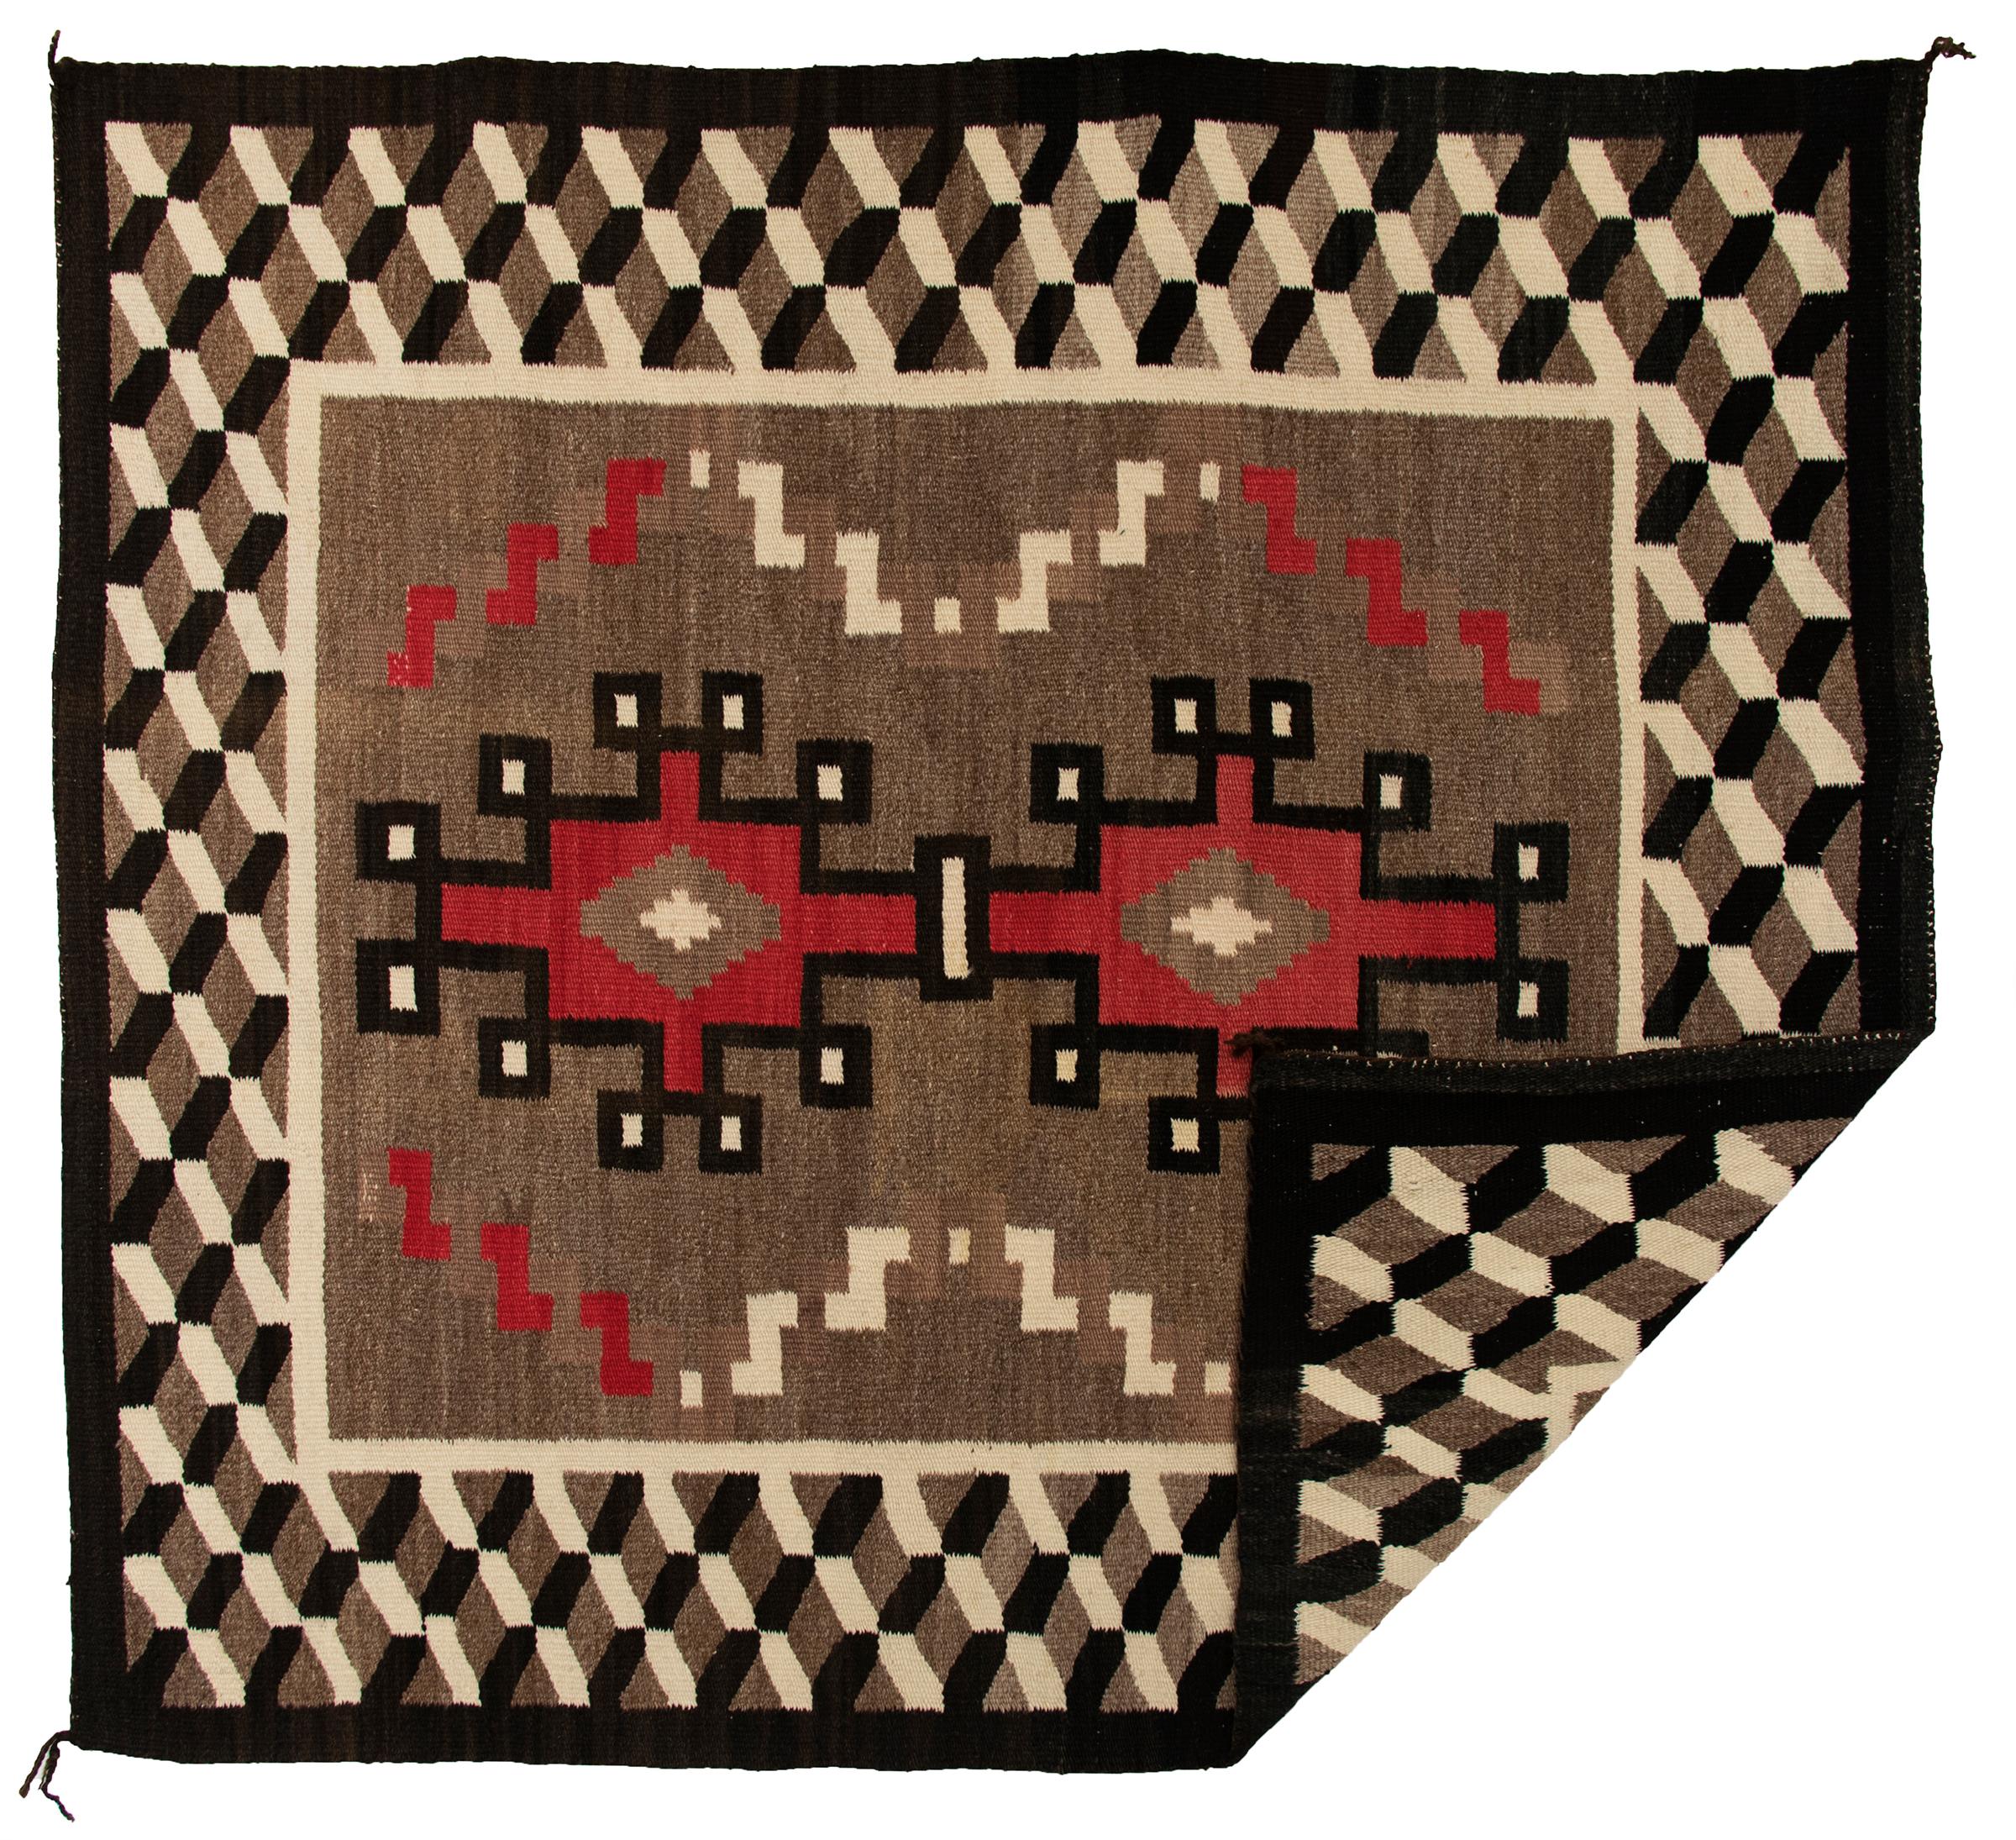 Native American Vintage Navajo Area Rug, 1940s, Wool, Geometric Design in Brown Black Red White